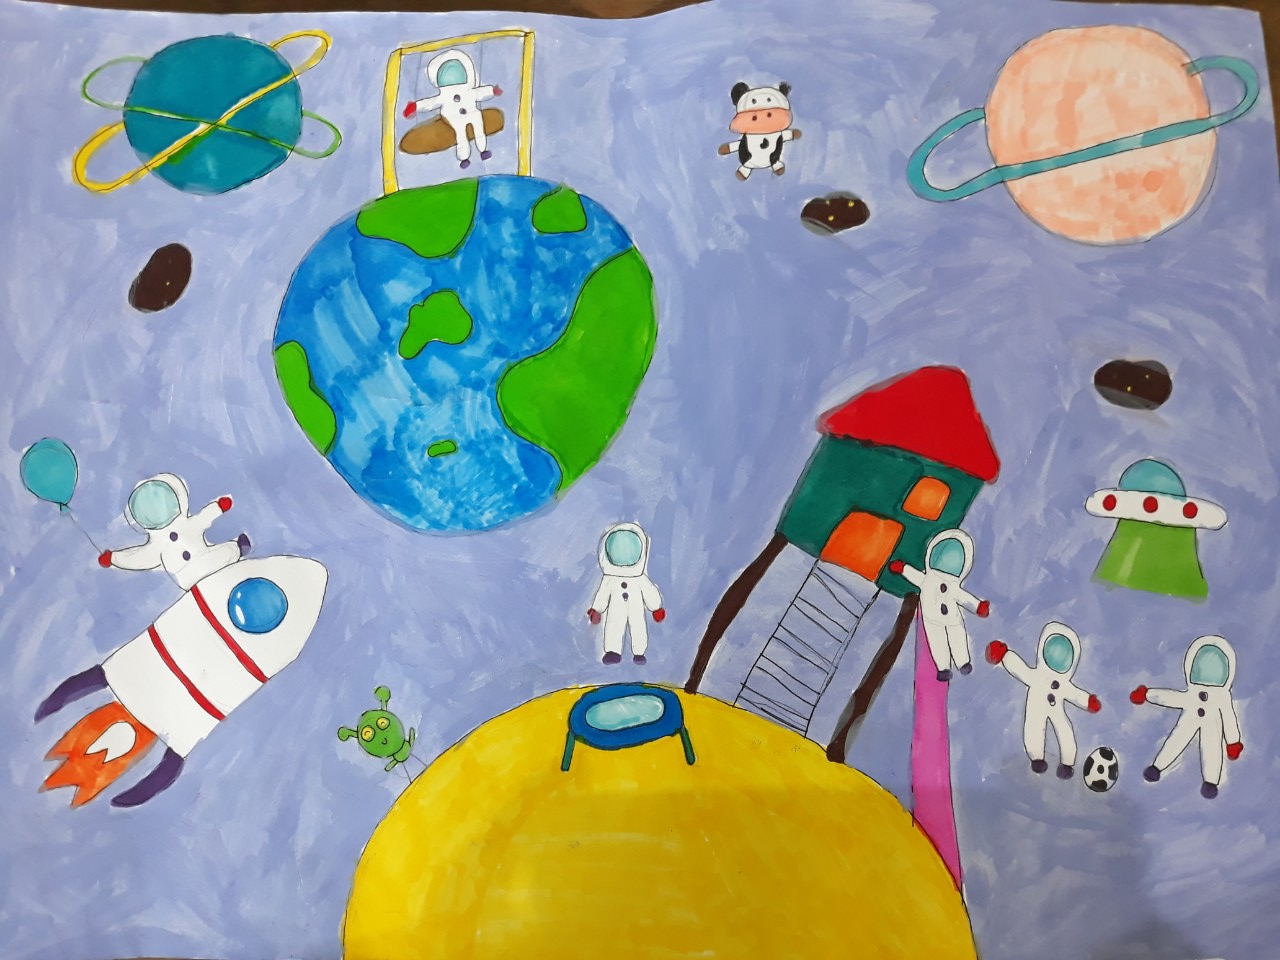 Vẽ tranh đề tài ước mơ của em  Vẽ tranh ước mơ của em  Vẽ ước mơ của em  làm phi hành gia vũ trụ  YouTube